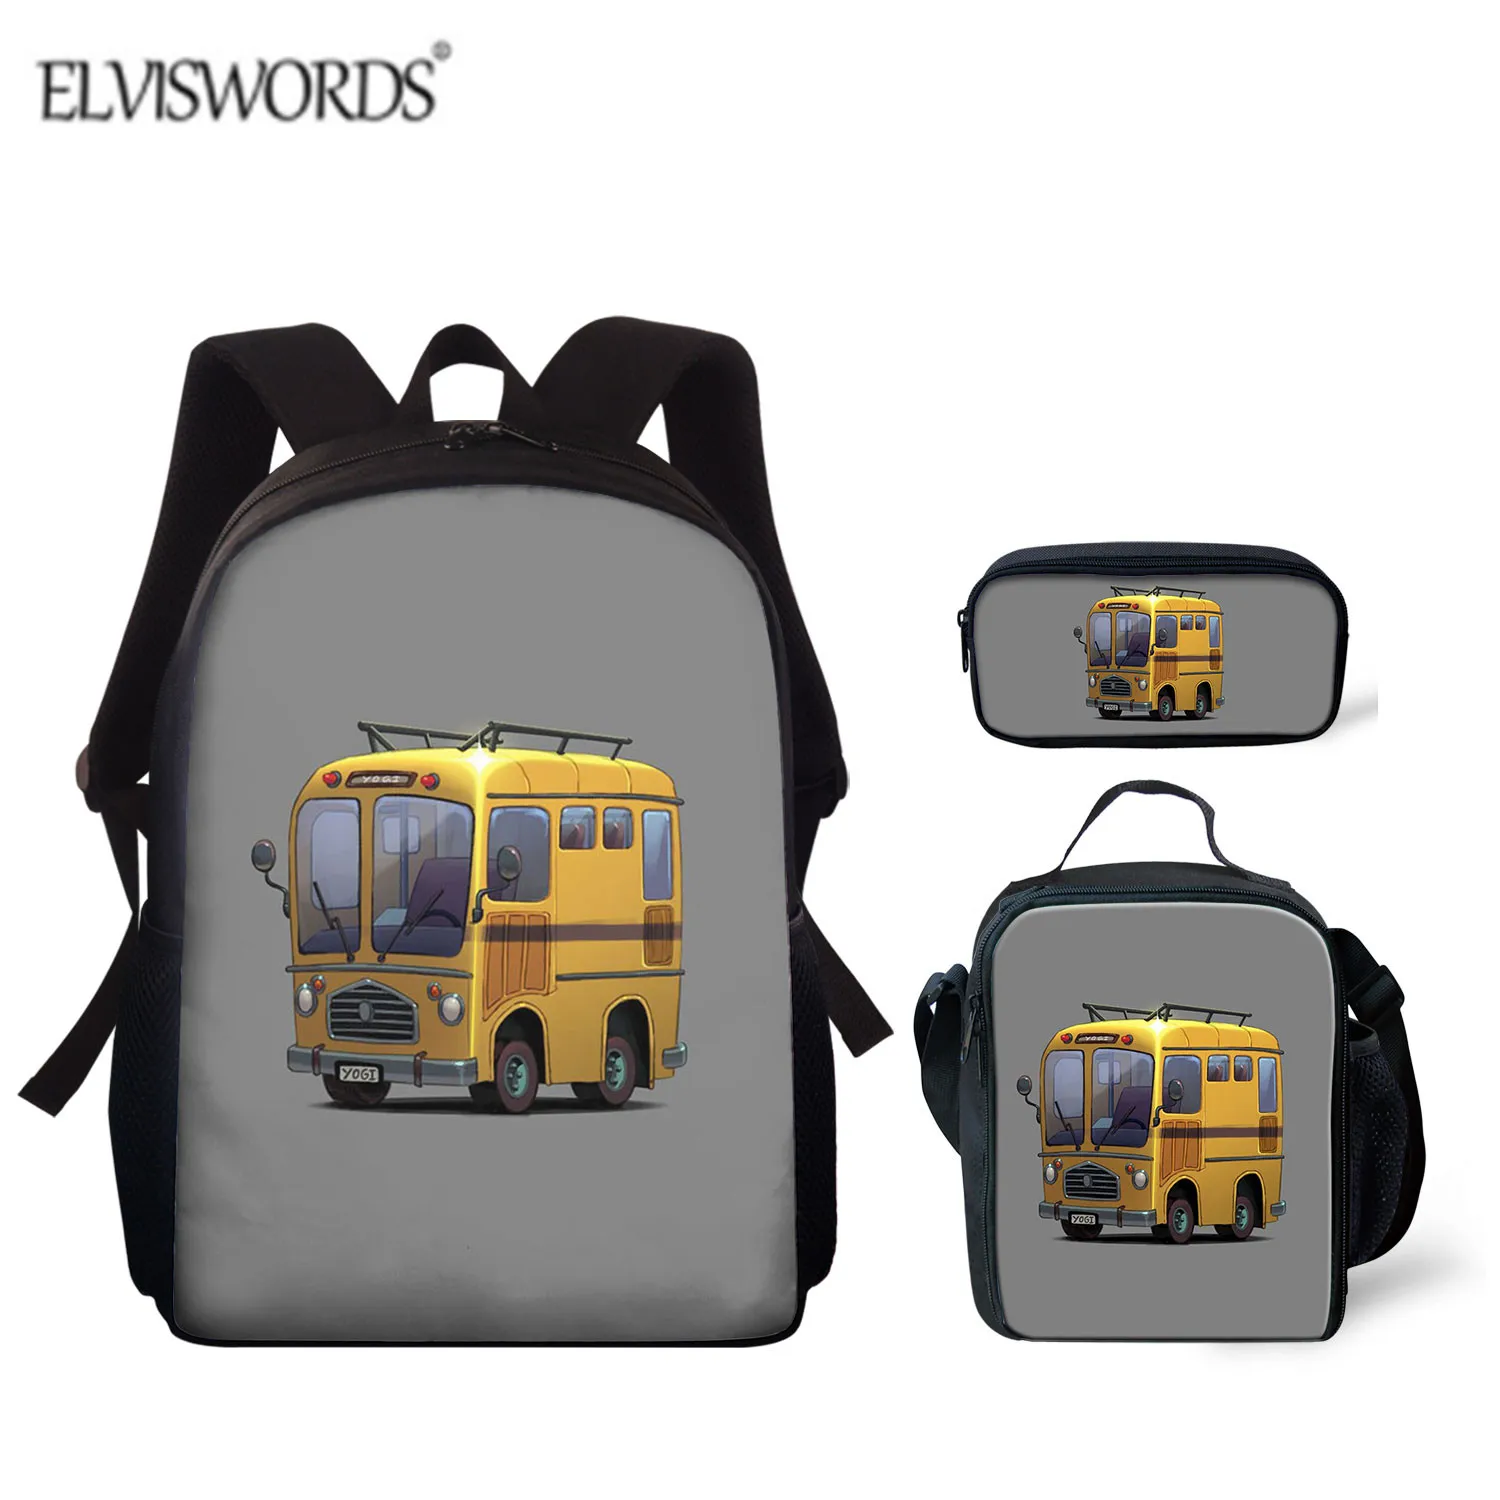 ELVISWORDS Повседневная Подростковая сумка для мальчиков с рисунком автобуса, рюкзаки, дорожная сумка на плечо, рюкзаки для учеников начальной ш...